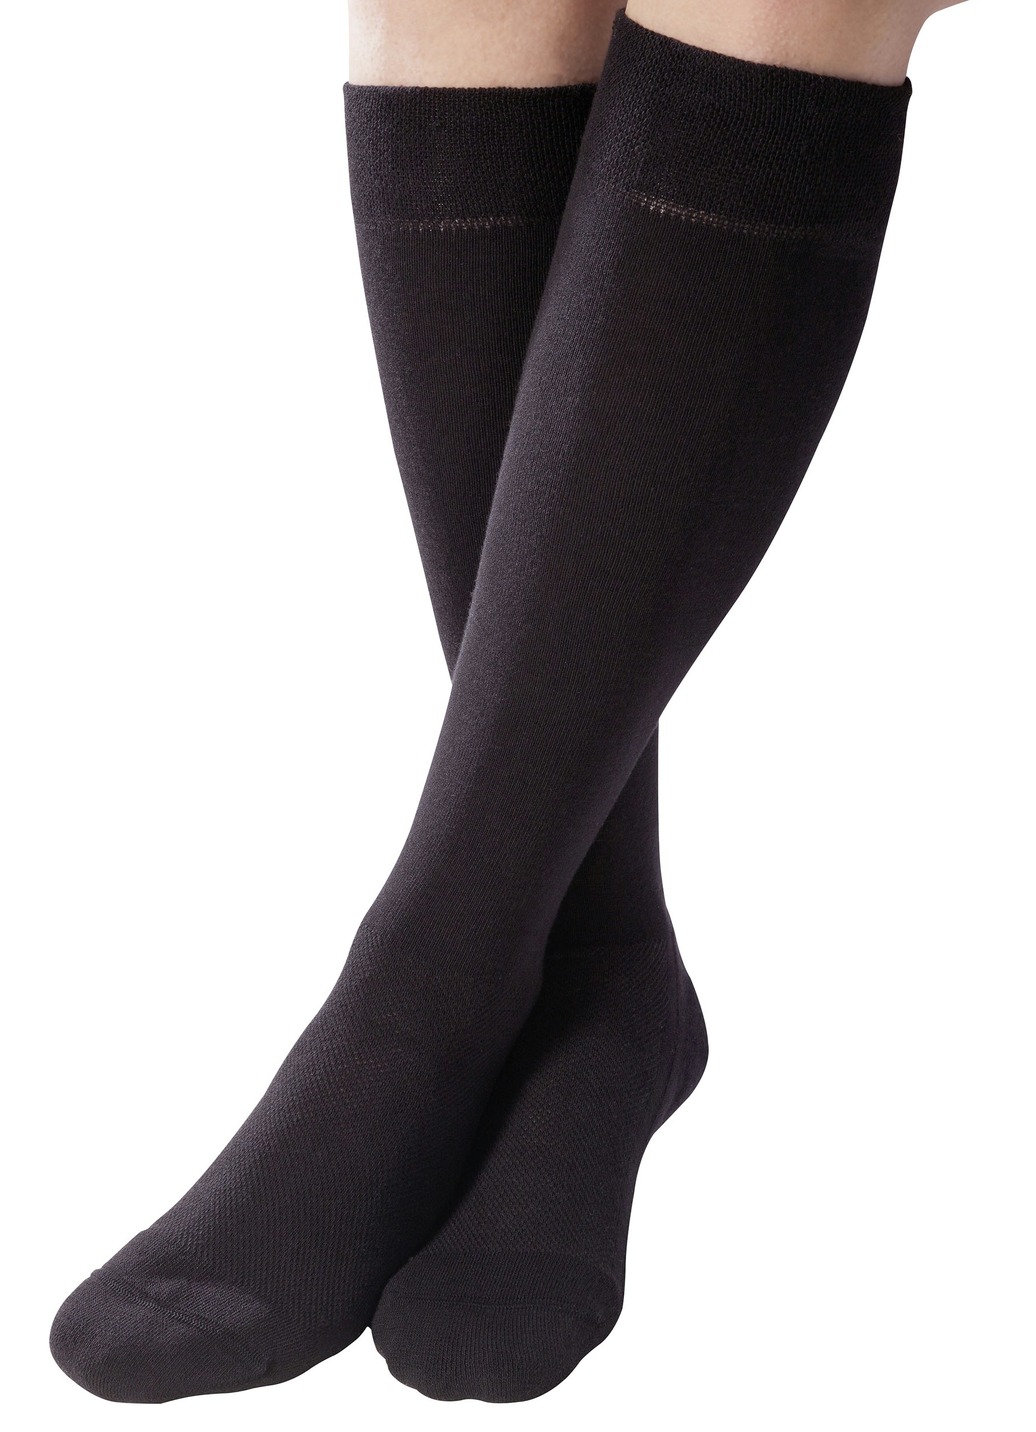 Gesundheitsstrümpfe - Zweierpack Komfort-Kniestrümpfe oder -Socken, in Größe 1 (37–39) bis 3 (43–45), in Farbe SCHWARZ, in Ausführung Zweierpack Komfort-Socken Ansicht 1